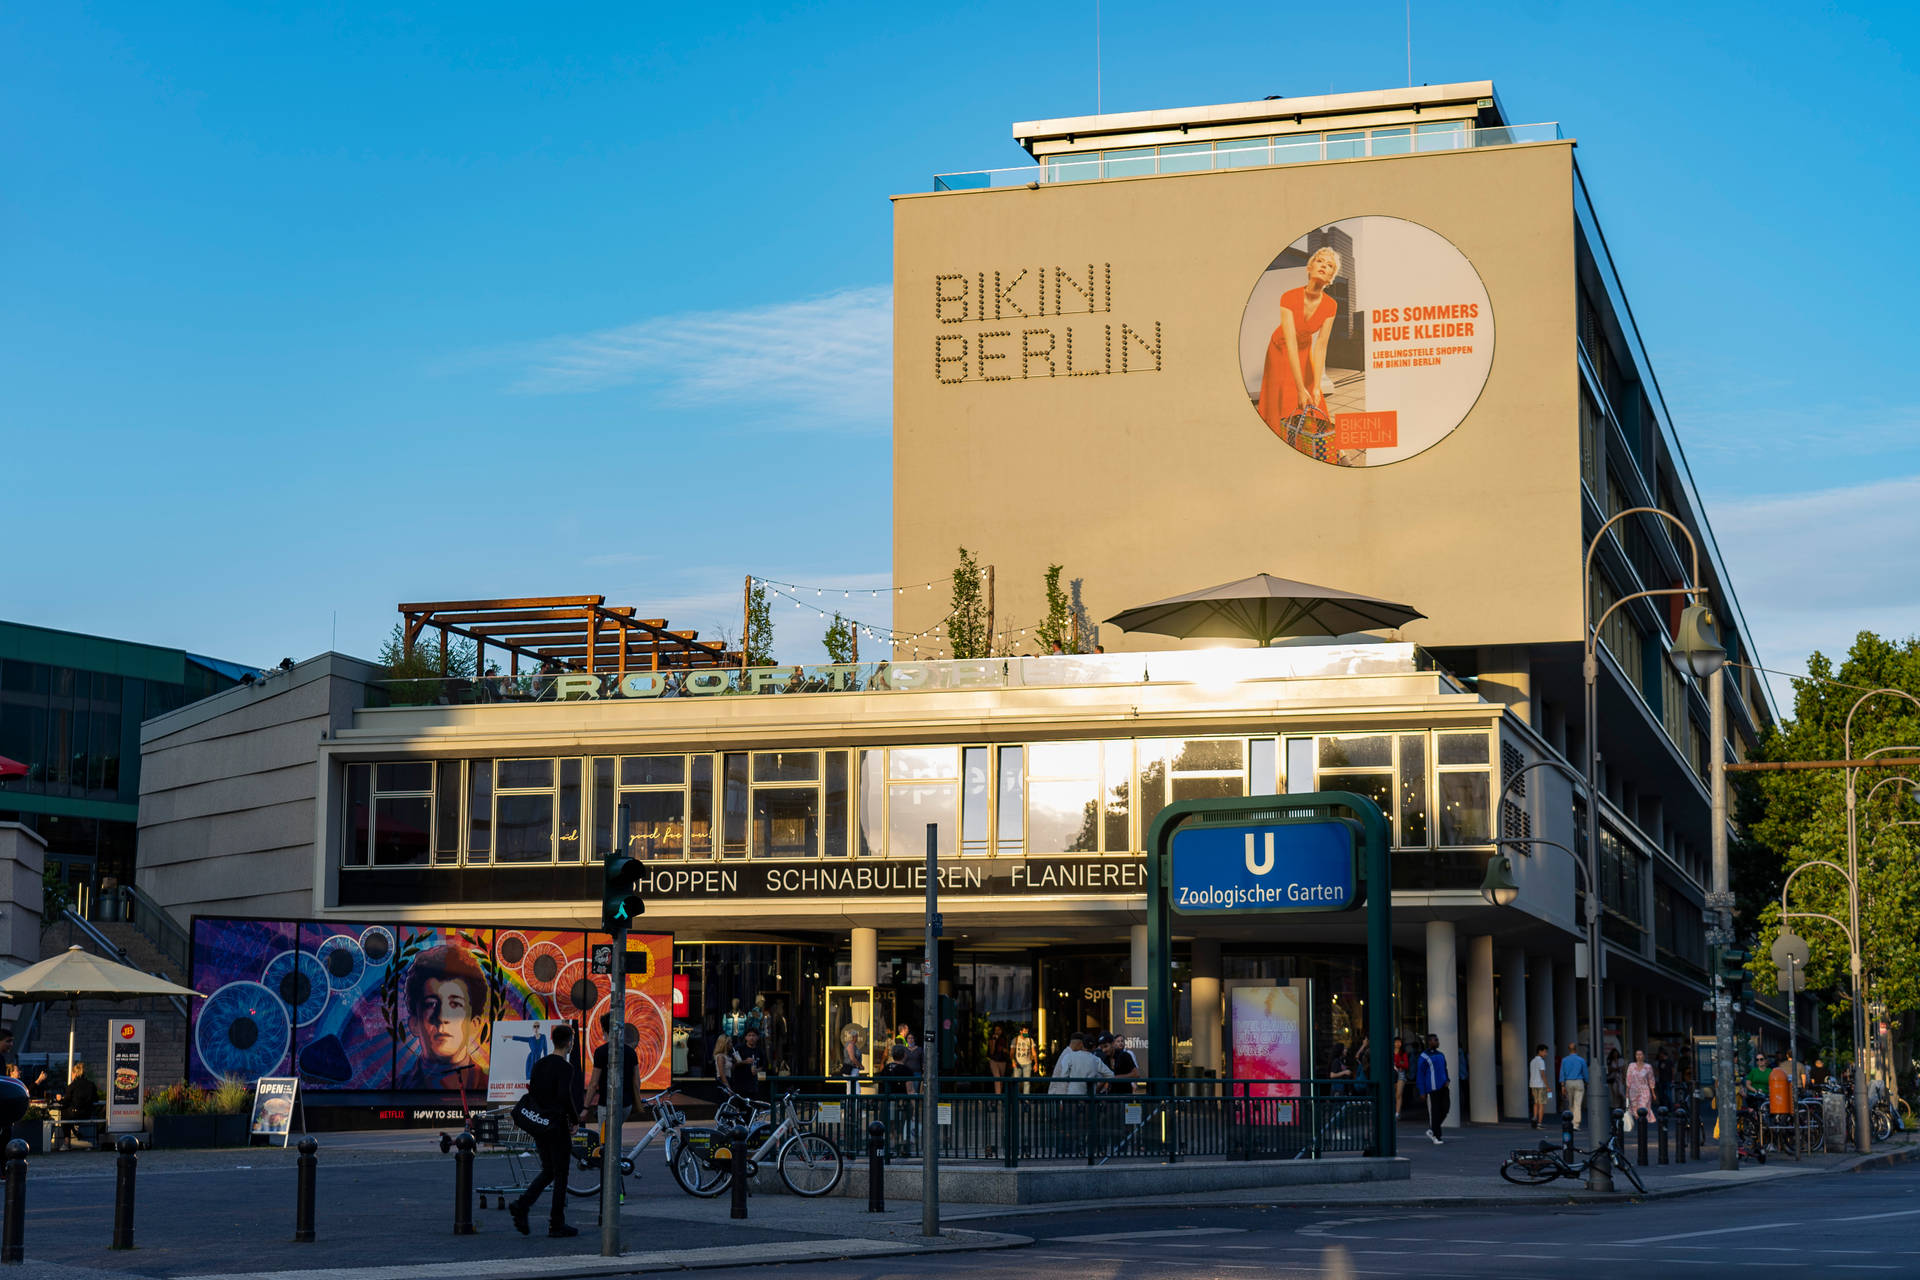 Bikini Berlin Billboard Wallpaper